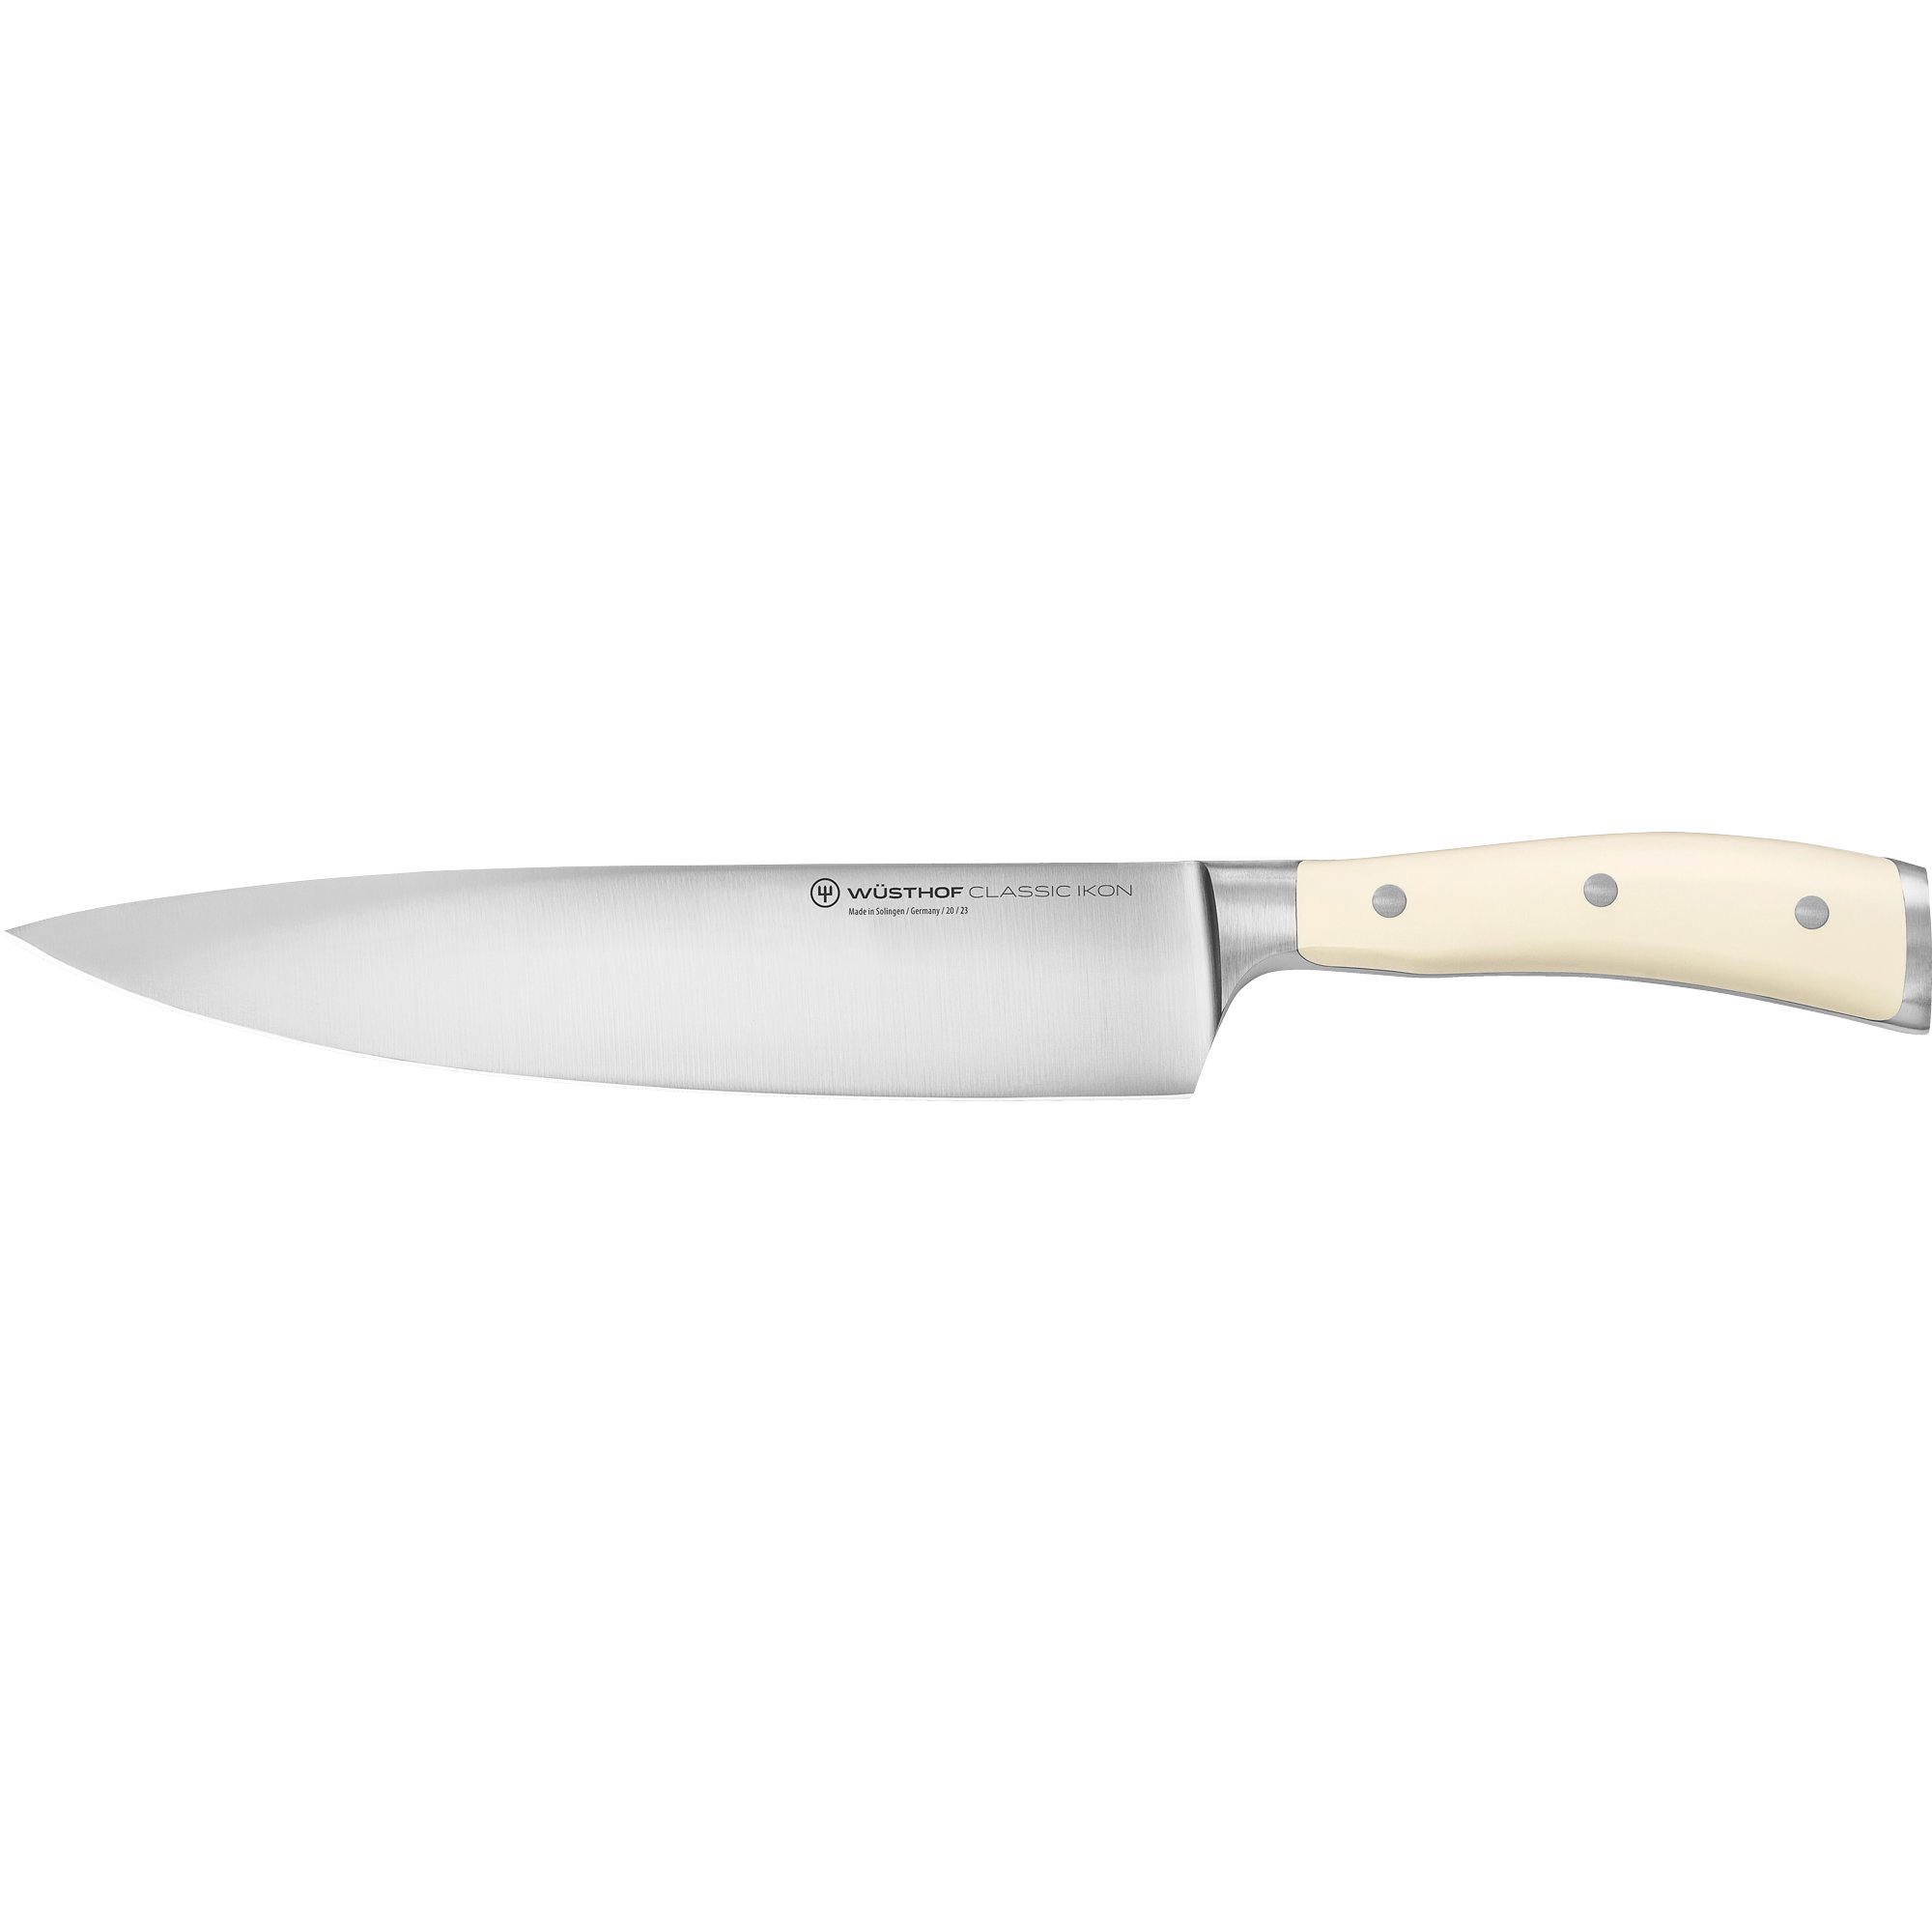 Wüsthof Classic Ikon kokkekniv 23 cm., hvid